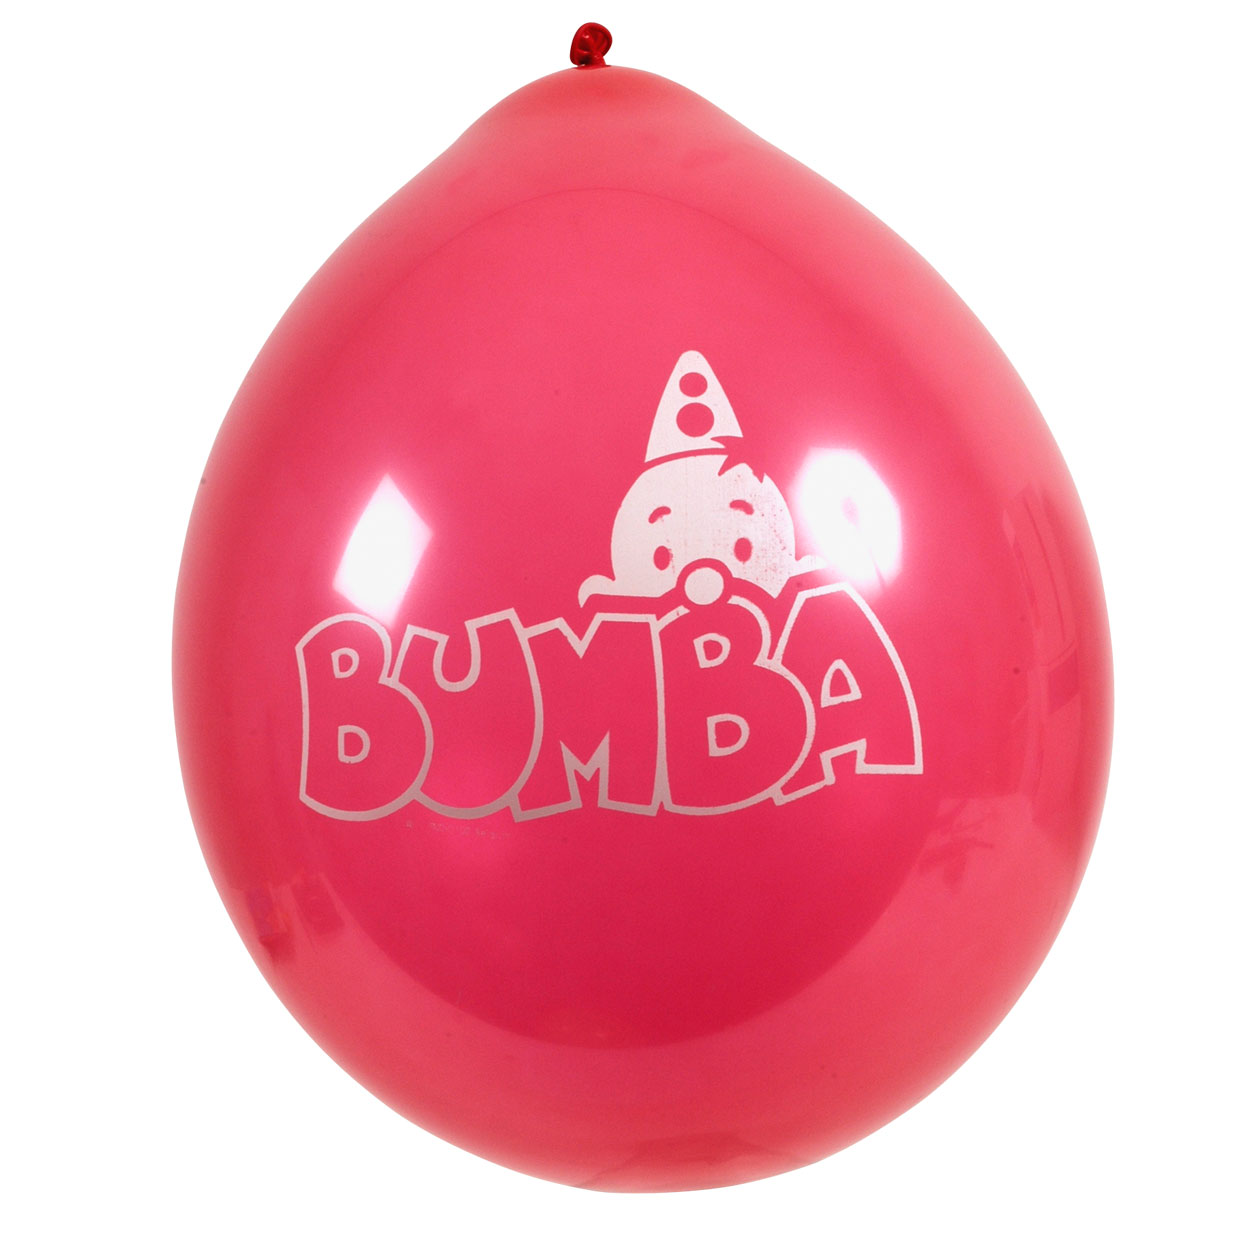 Bumba Ballons, 8 Stück.